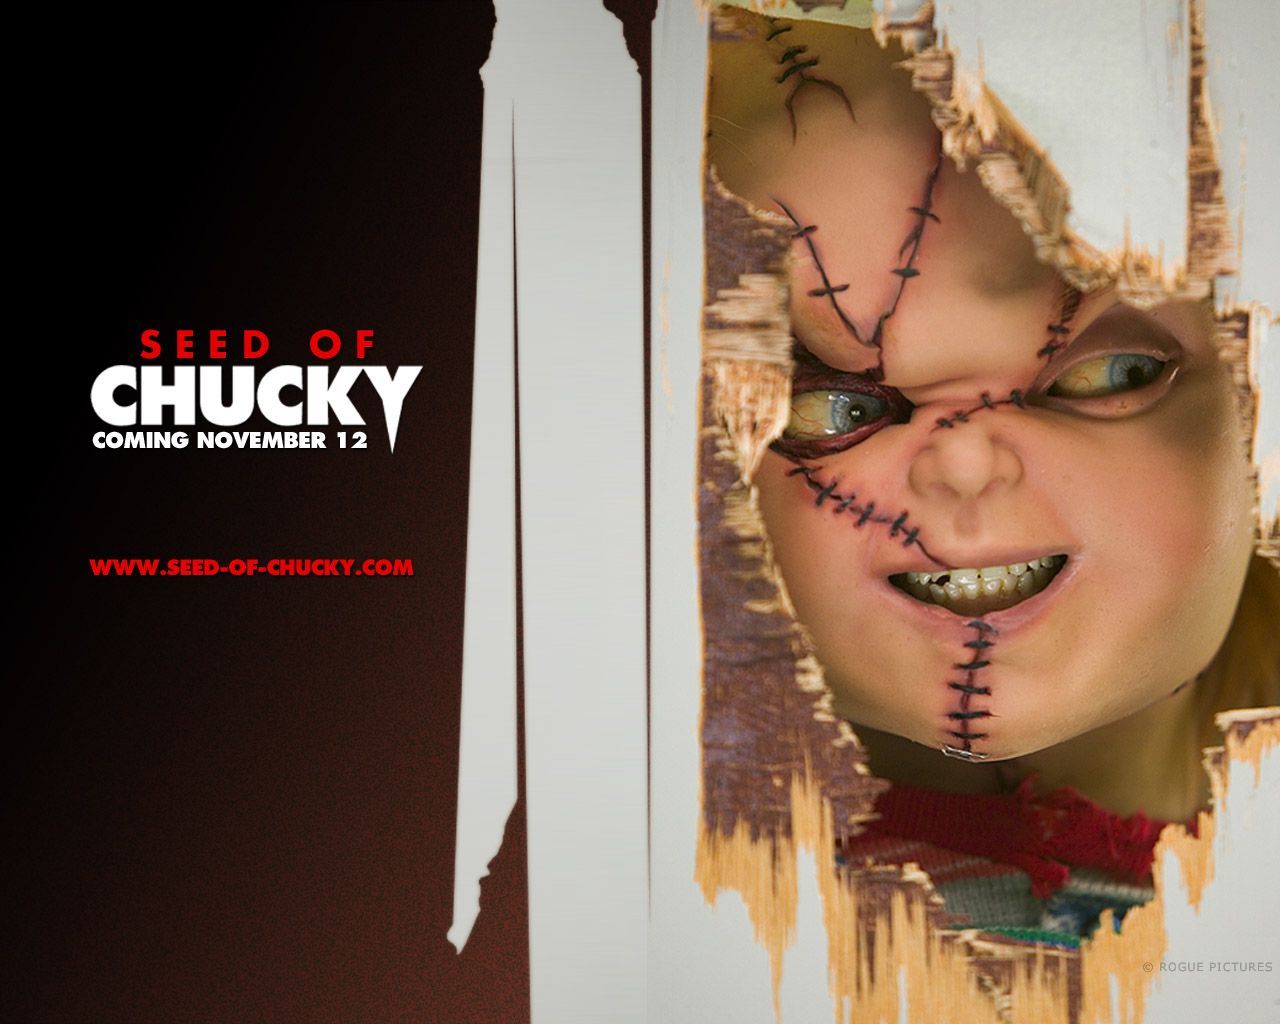 Chucky The Killer Doll Art - HD Wallpaper 